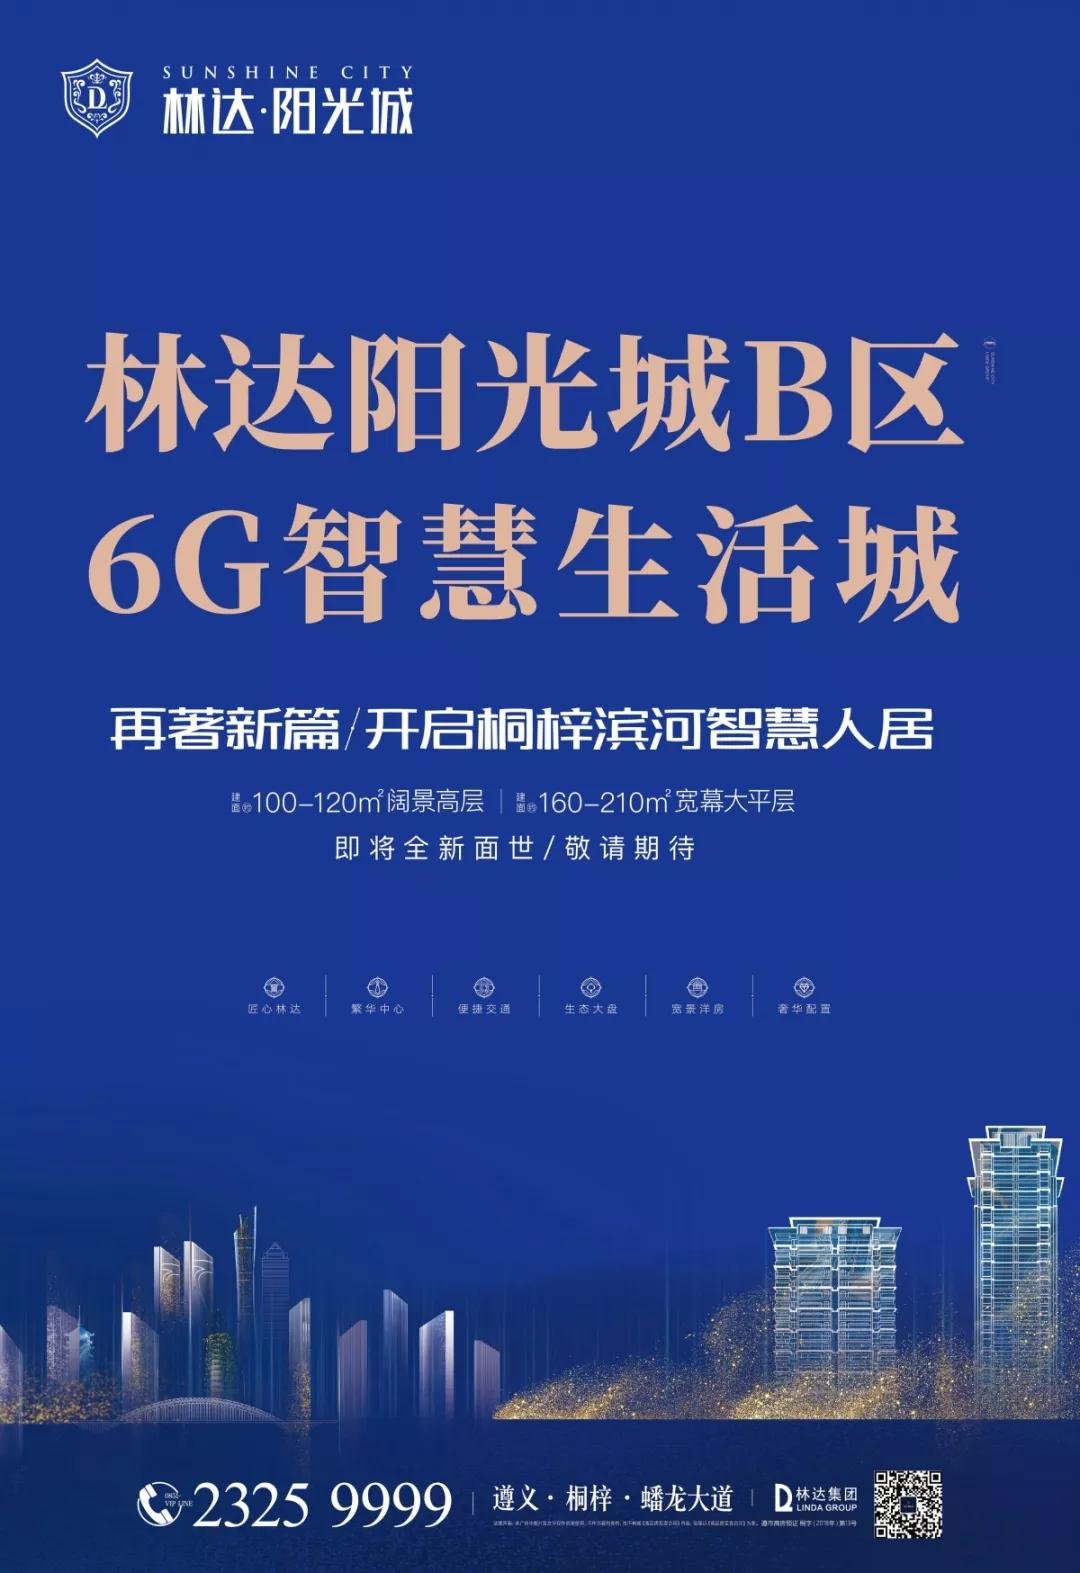 林达阳光城B区VIP登记全城启动，引领6G智慧生活！